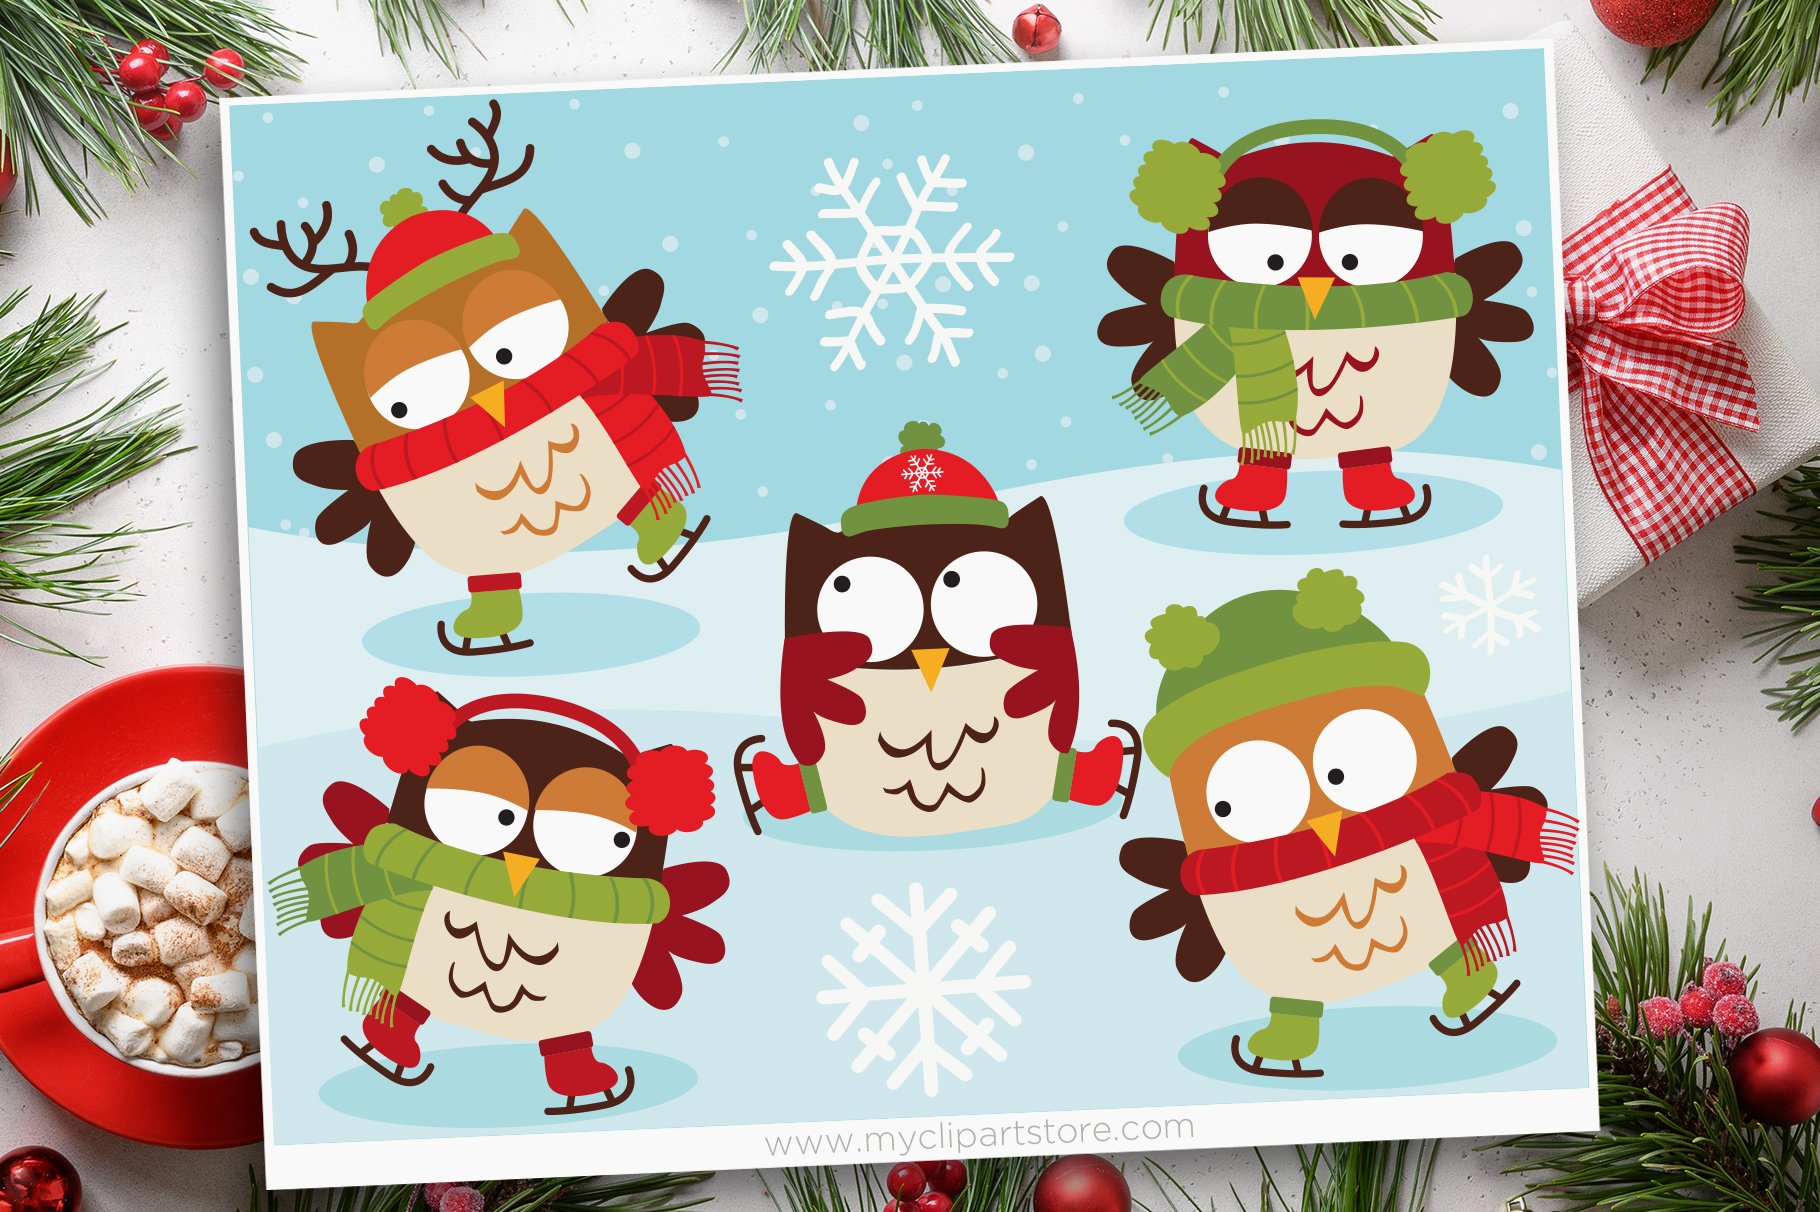 Owls on Skates, Christmas Clipart.